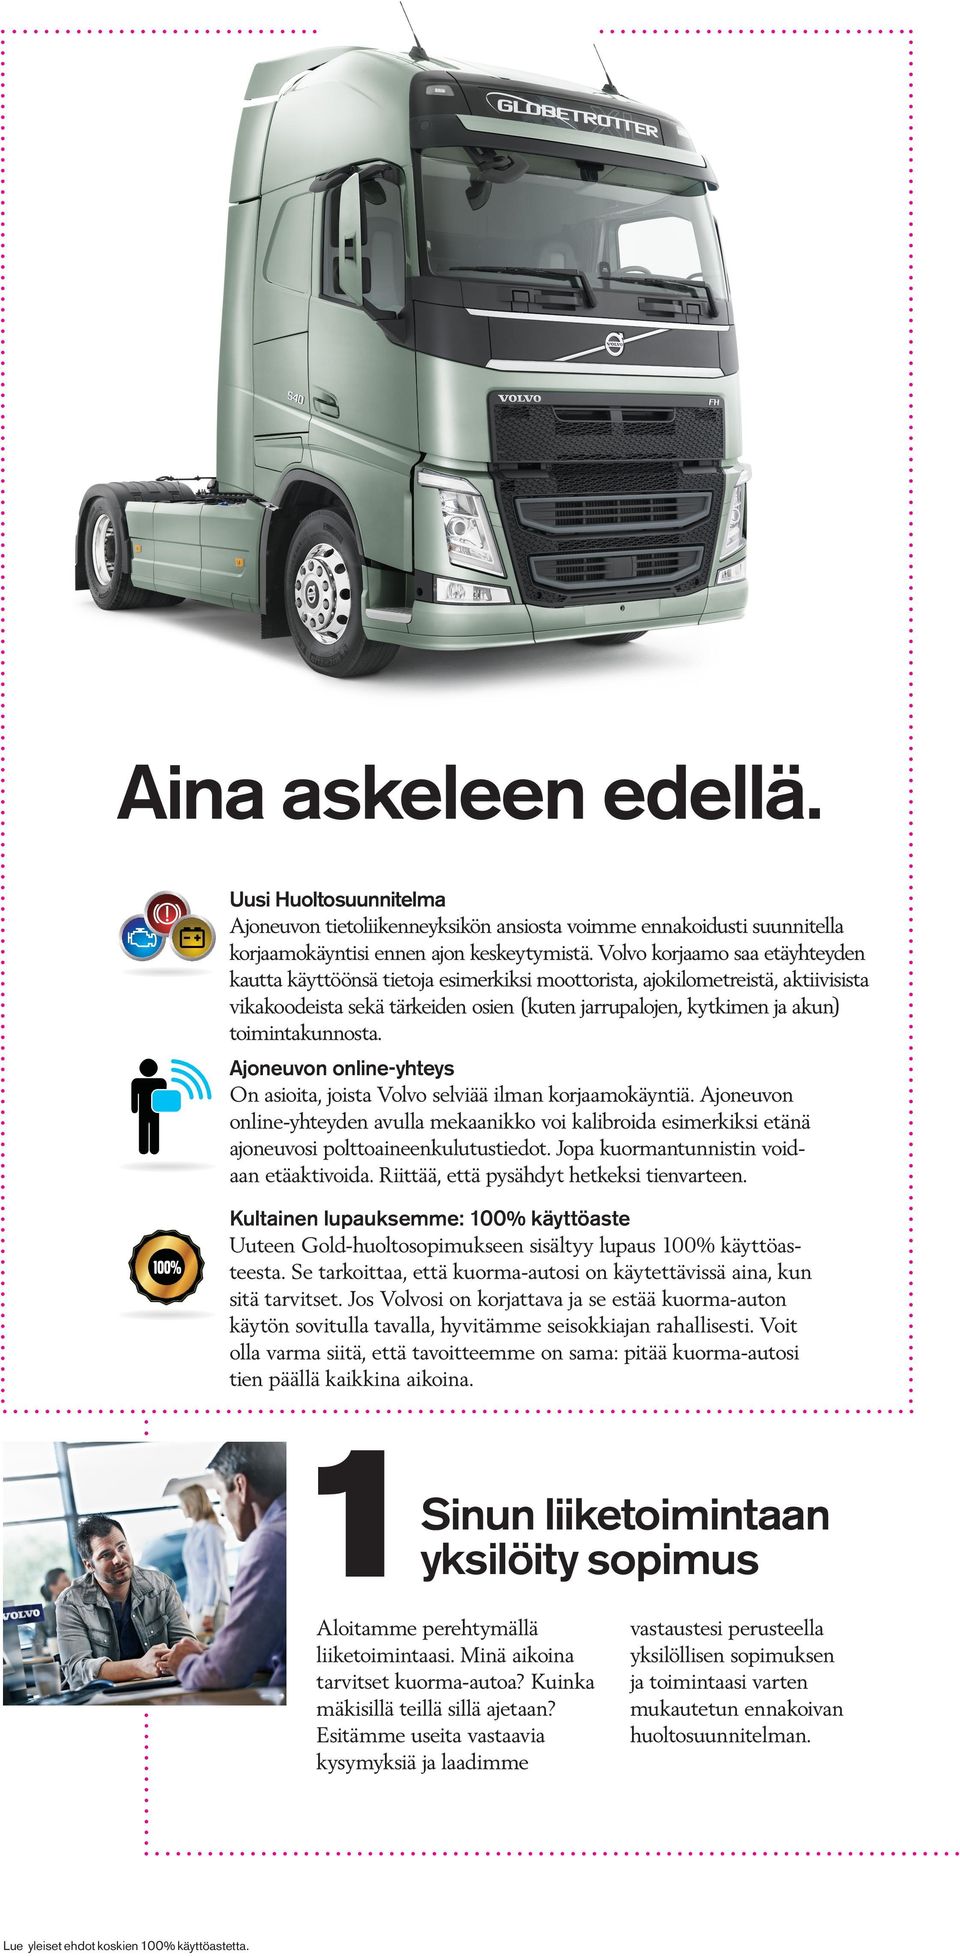 toimintakunnosta. Ajoneuvon online-yhteys On asioita, joista Volvo selviää ilman korjaamokäyntiä.